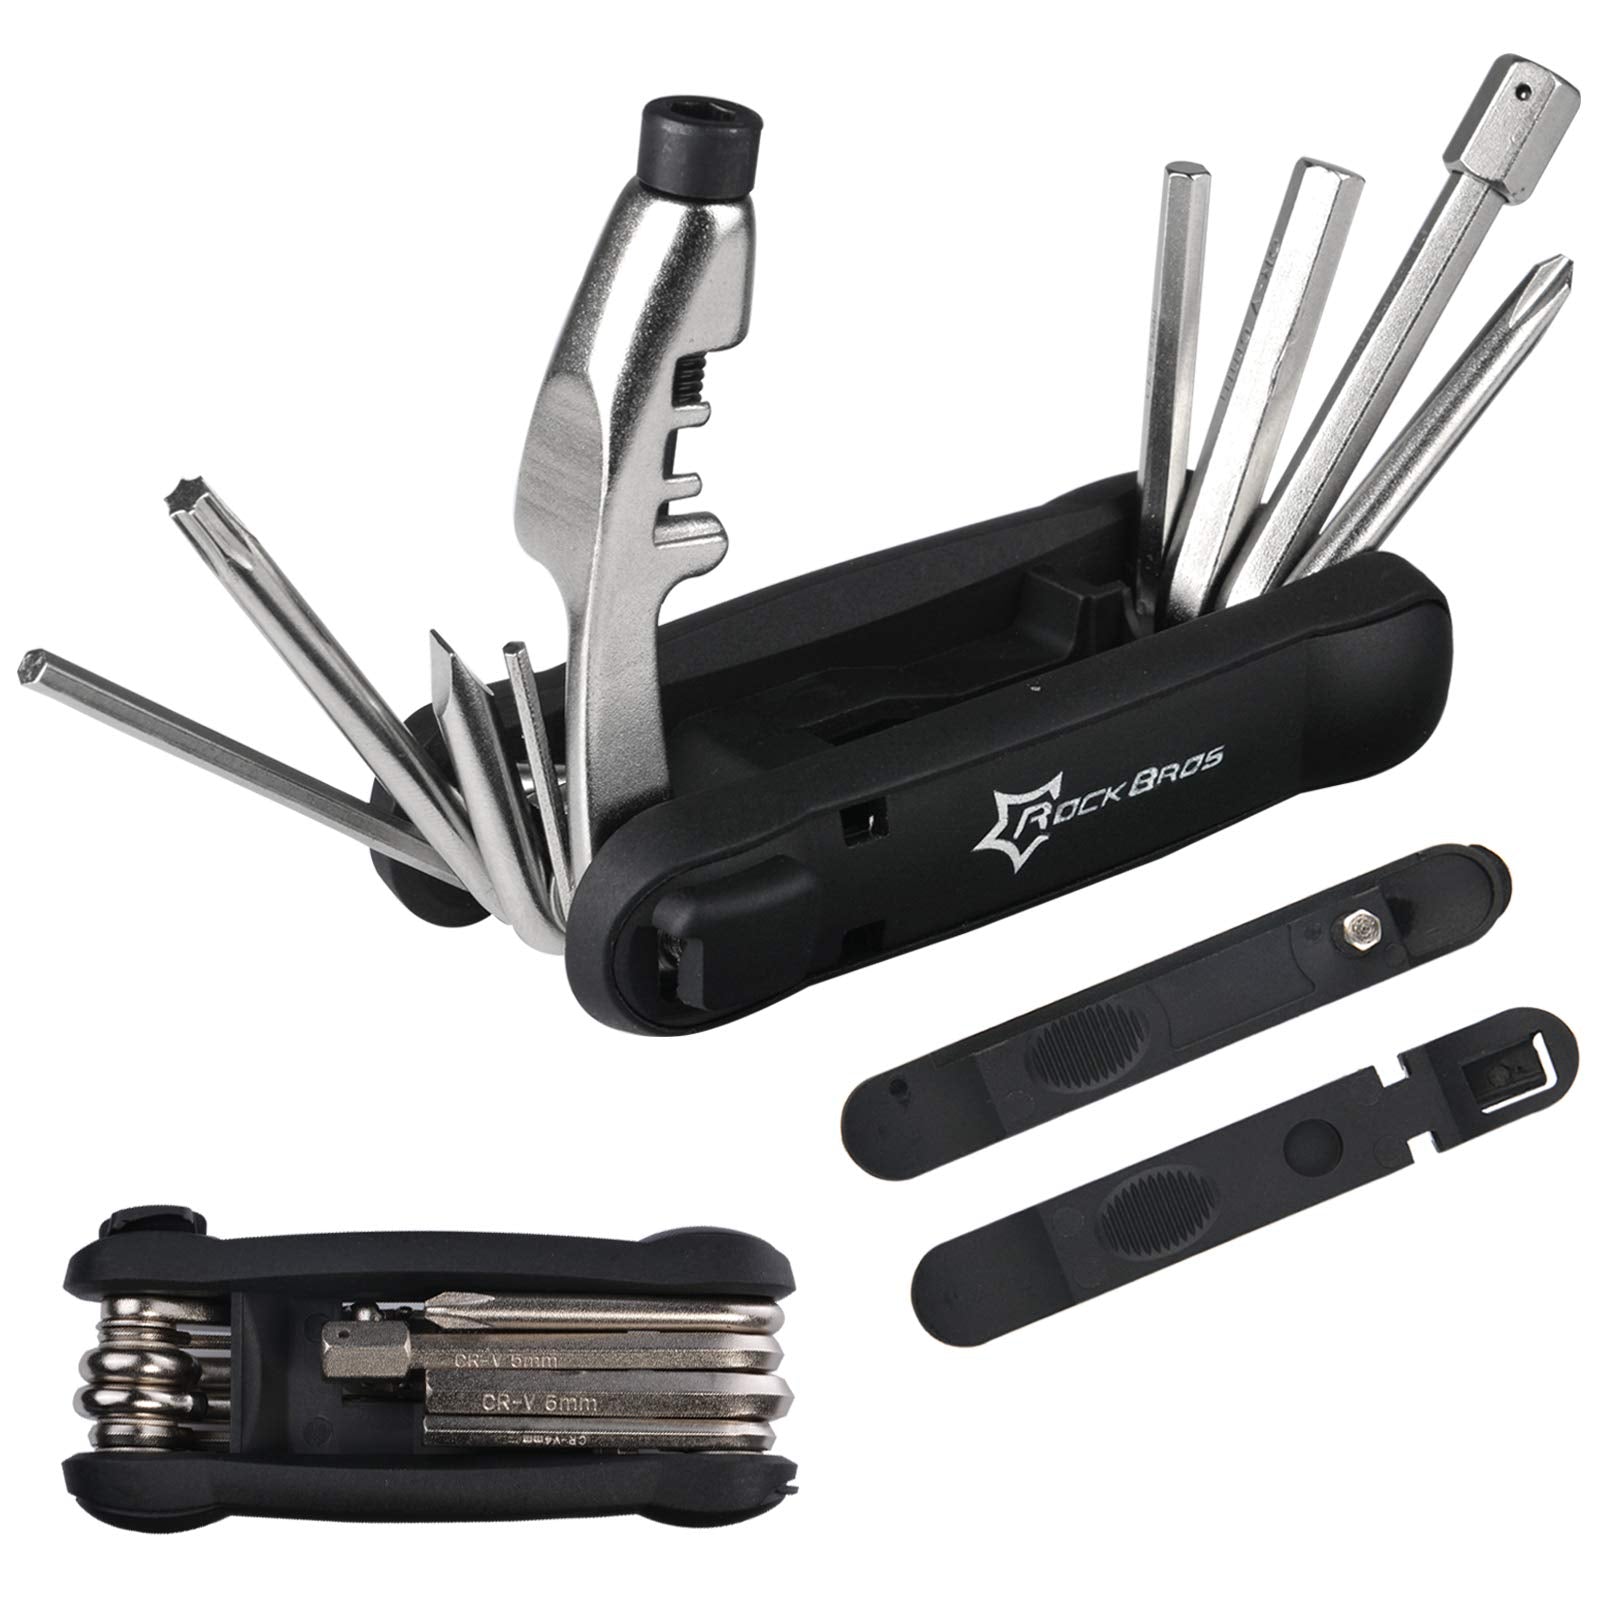 ROCKBROS 12 in 1 Portable Bike Repair Tool Kit Multifunctional Pocket Tool